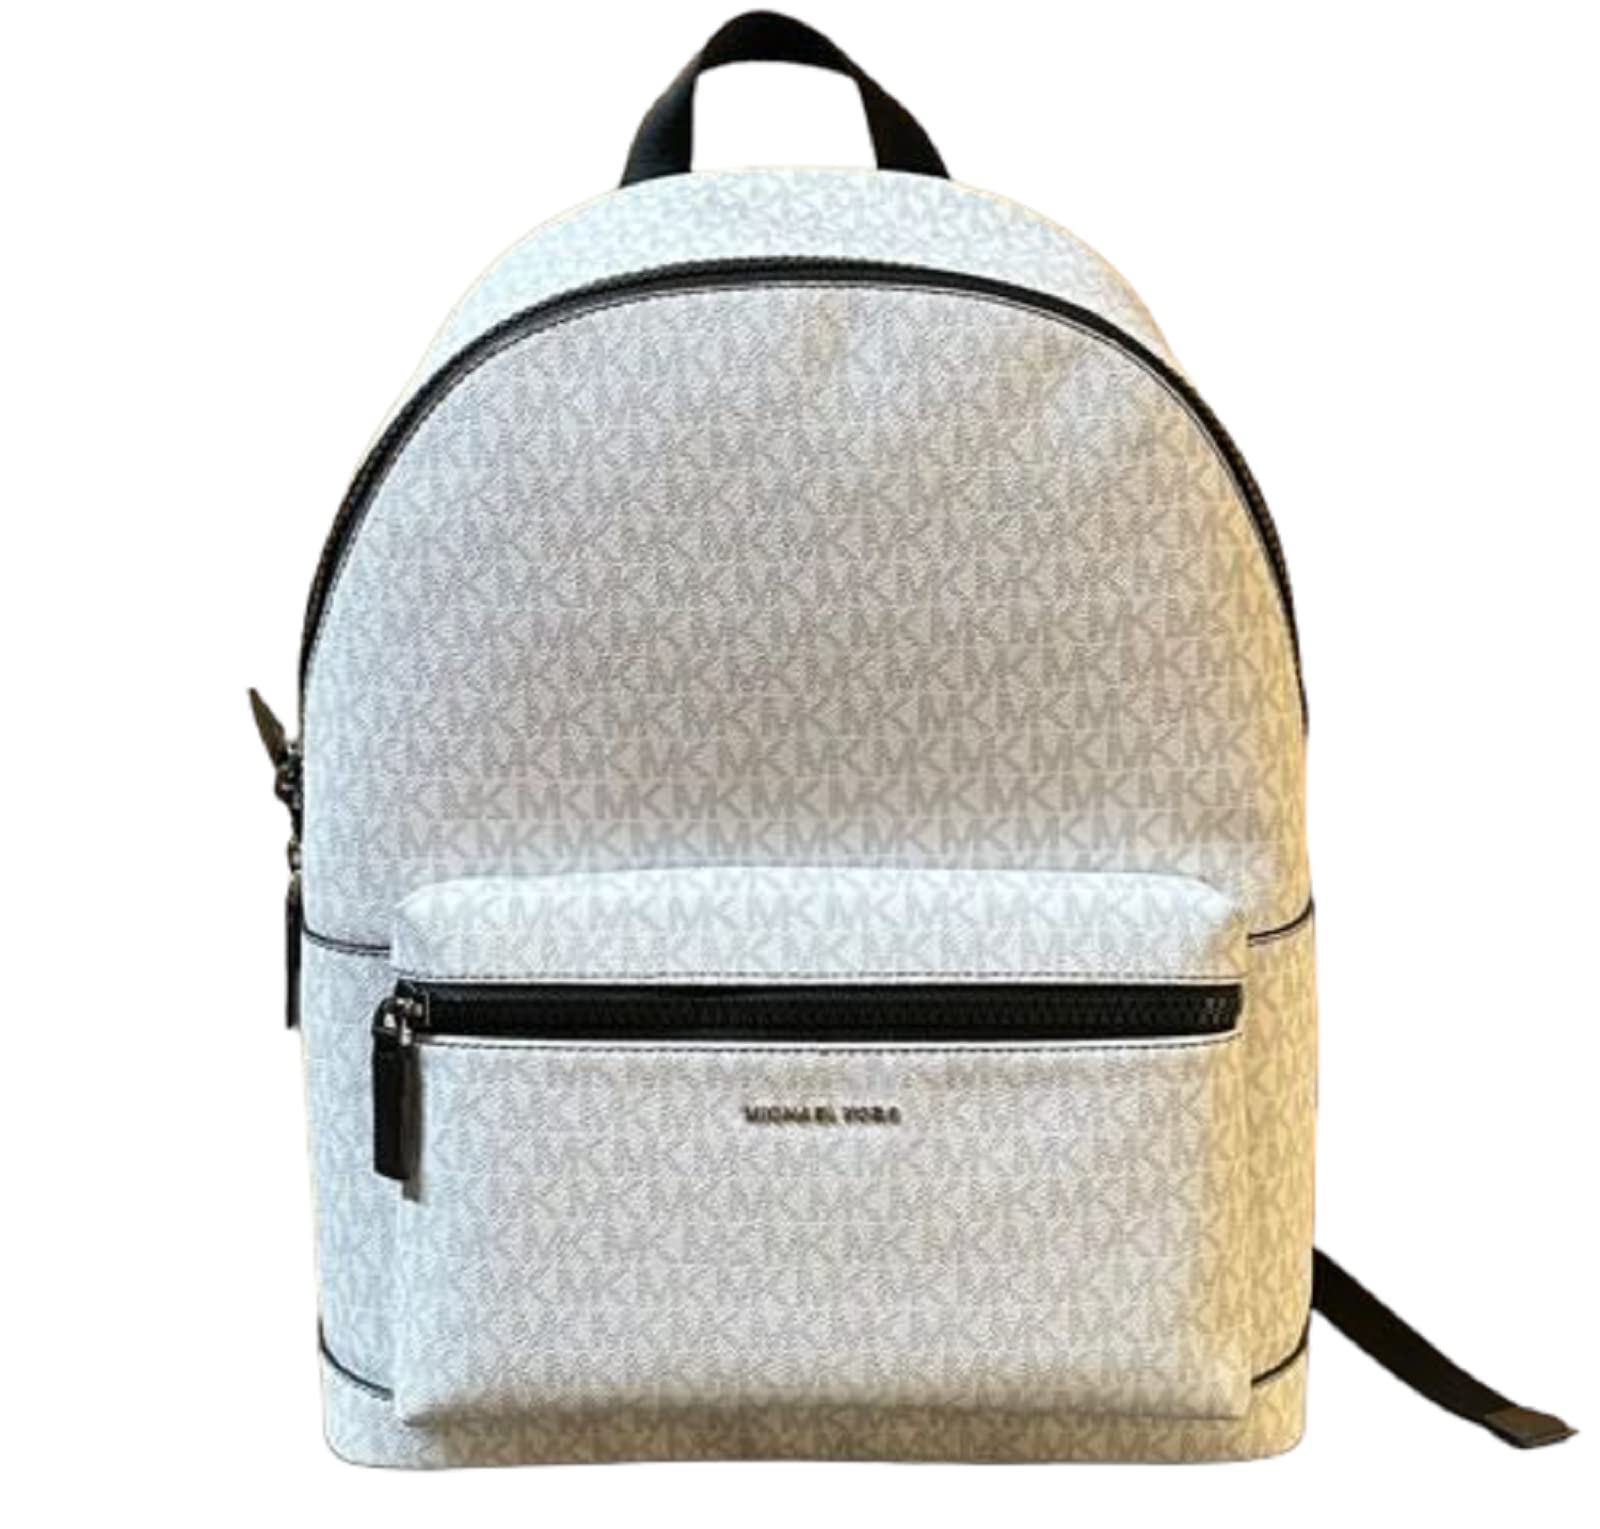 Jaycee Medium Pebbled Leather Backpack  Michael Kors